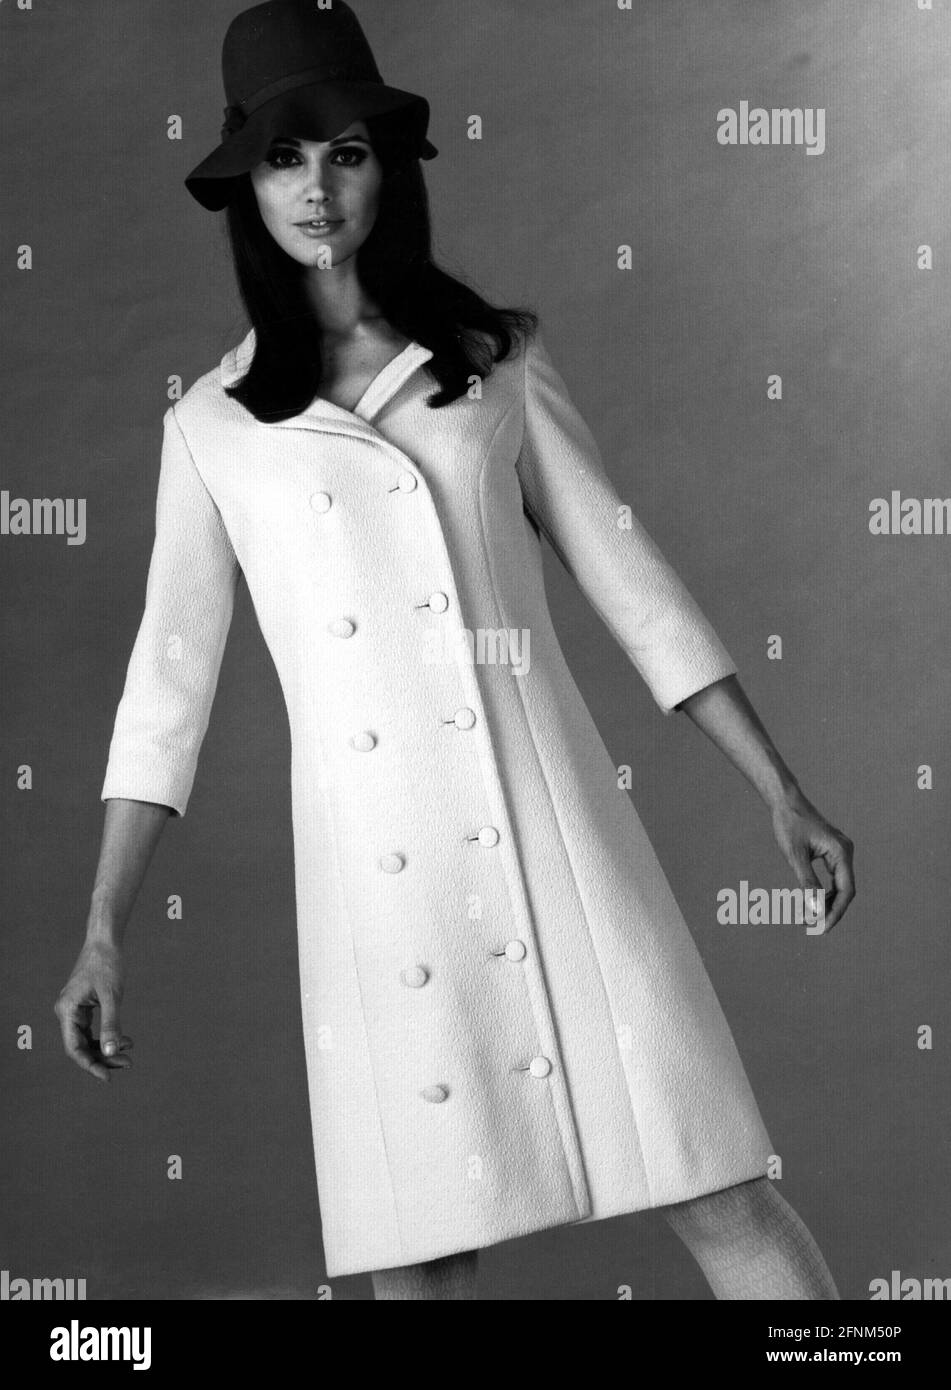 Mode, 70er Jahre, Damenmode, Frau mit Mantel und Hut, ZUSÄTZLICHE-RIGHTS-CLEARANCE-INFO-NOT-AVAILABLE Stockfoto